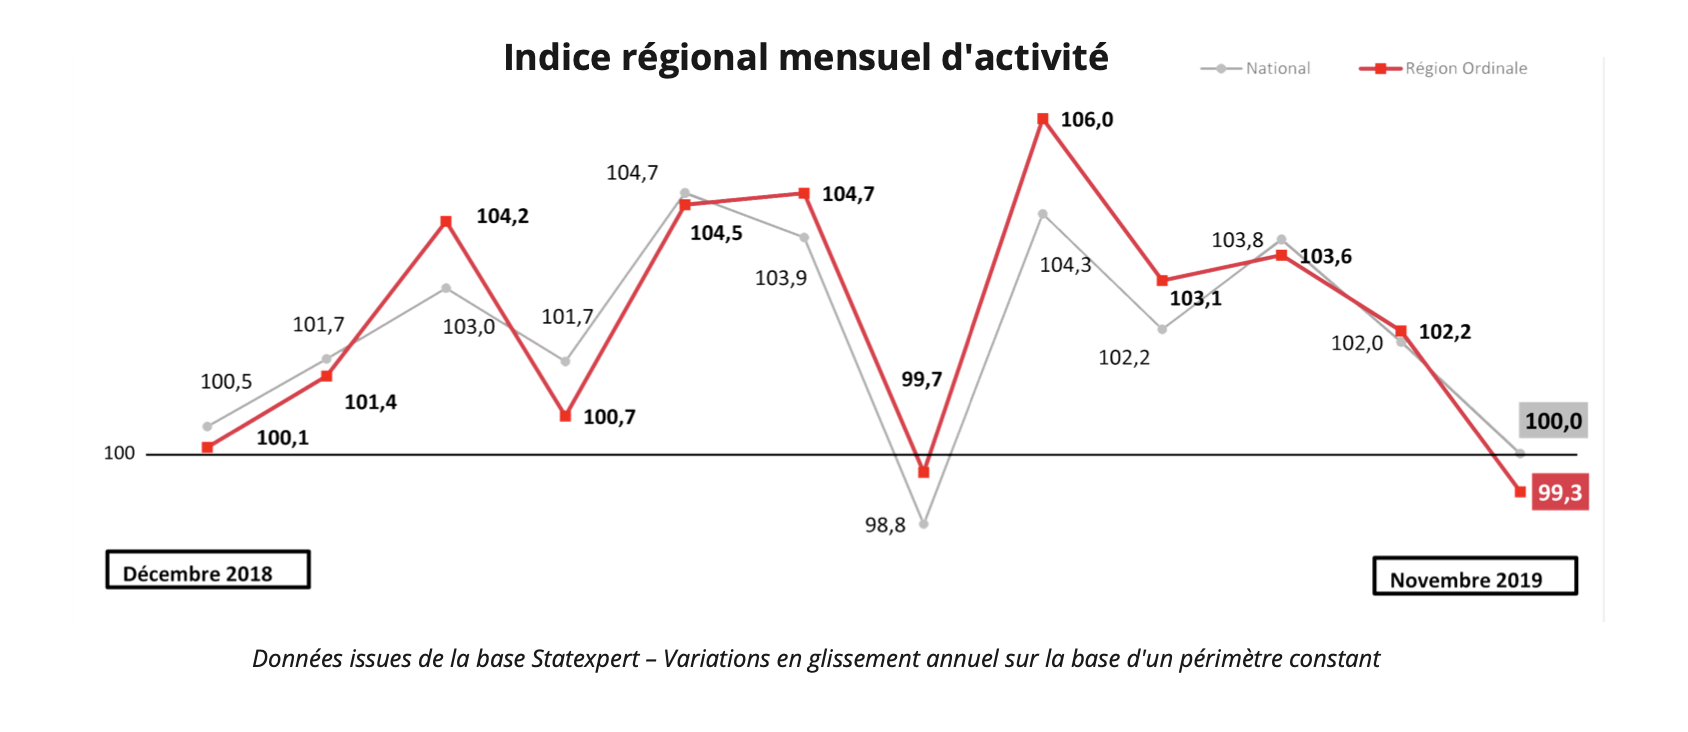 Baromètre économique novembre 2019 - indice régional mensuel d'activité